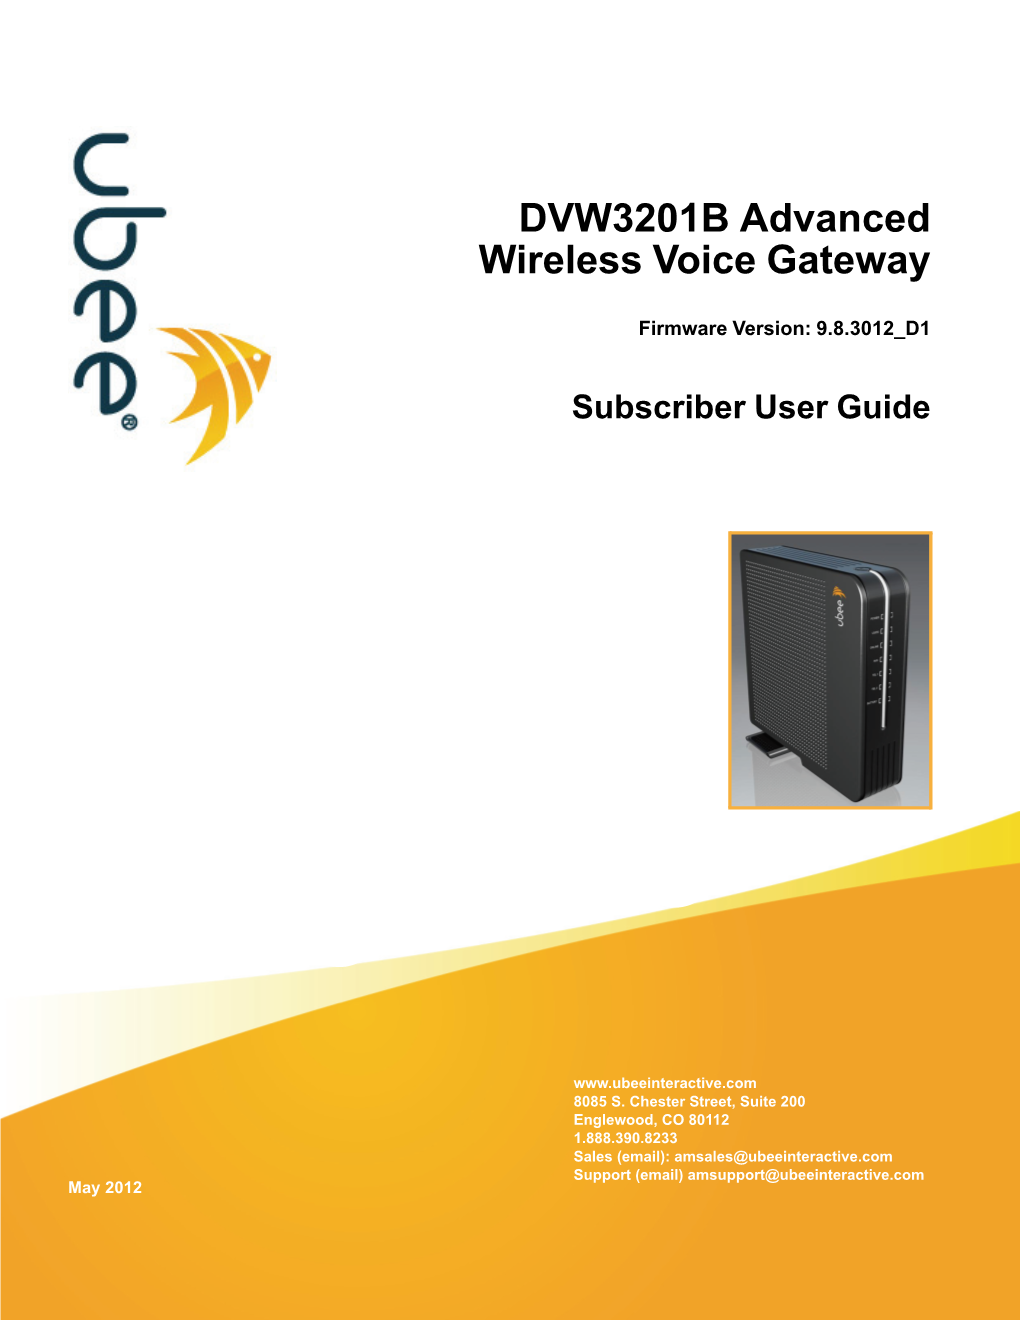 DVW3201B Advanced Wireless Voice Gateway